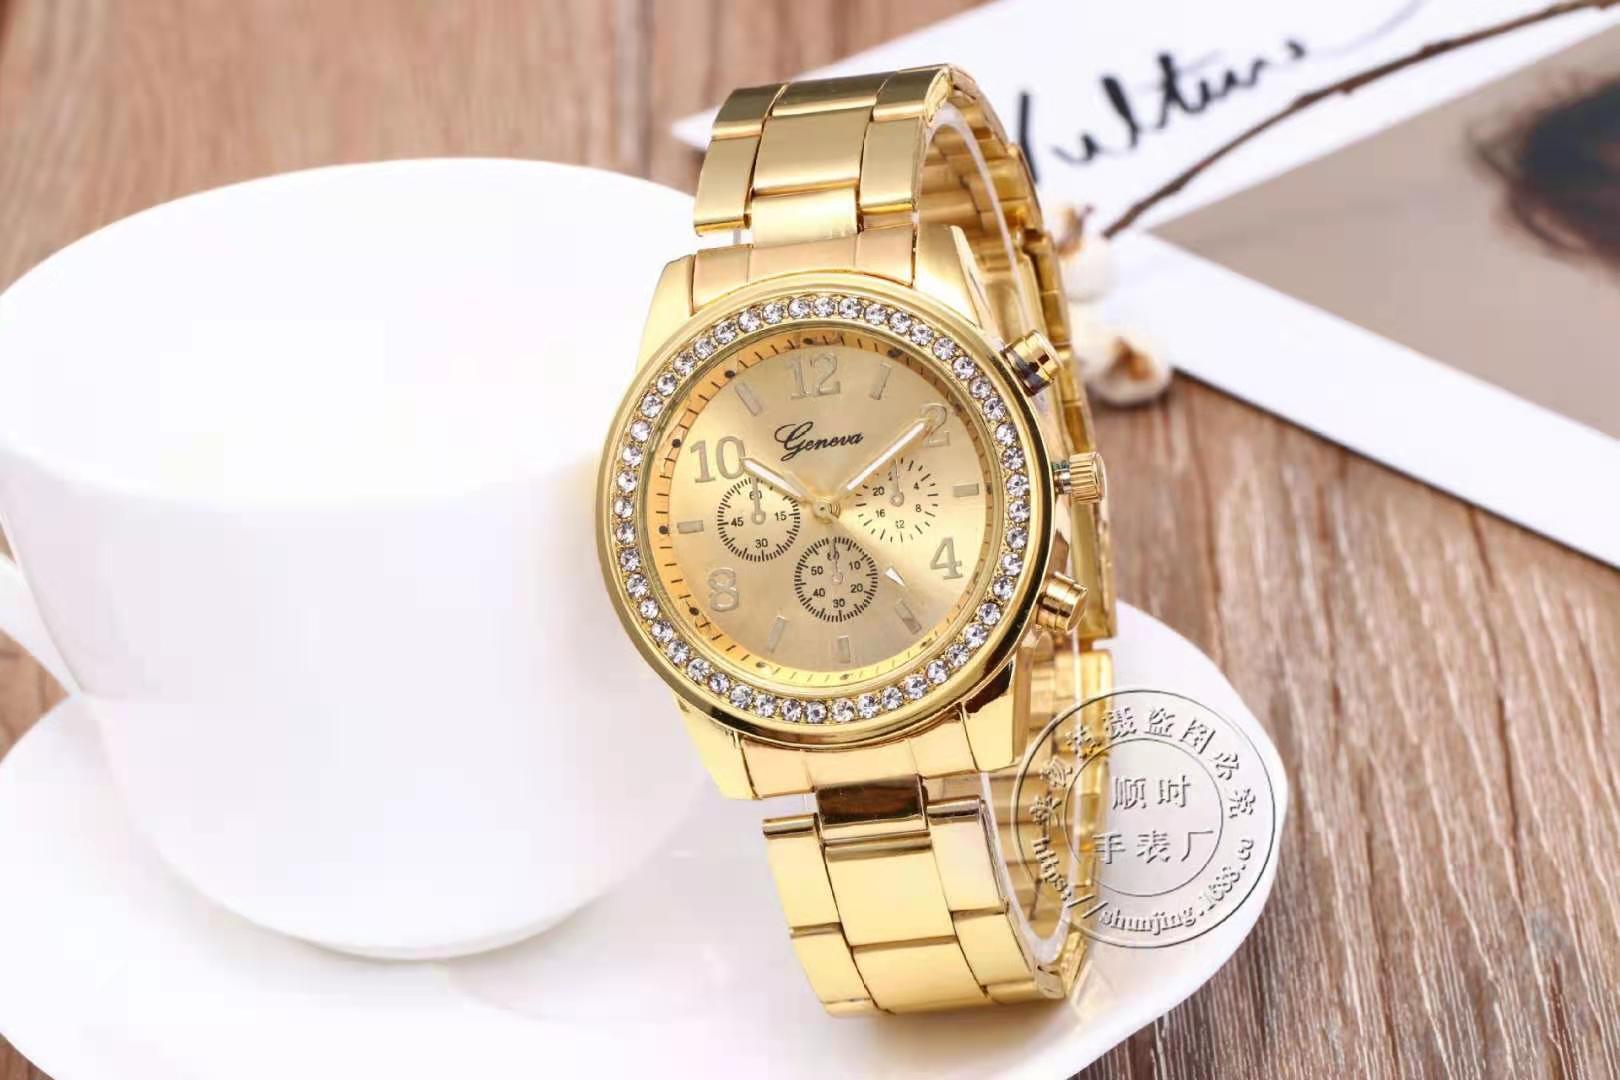 Stainless Steel Sport Quartz Hour Wrist Analog Watch Watches Women Fashion Watch 2021 Women's Watch 2021 Luxury Gift Relogio